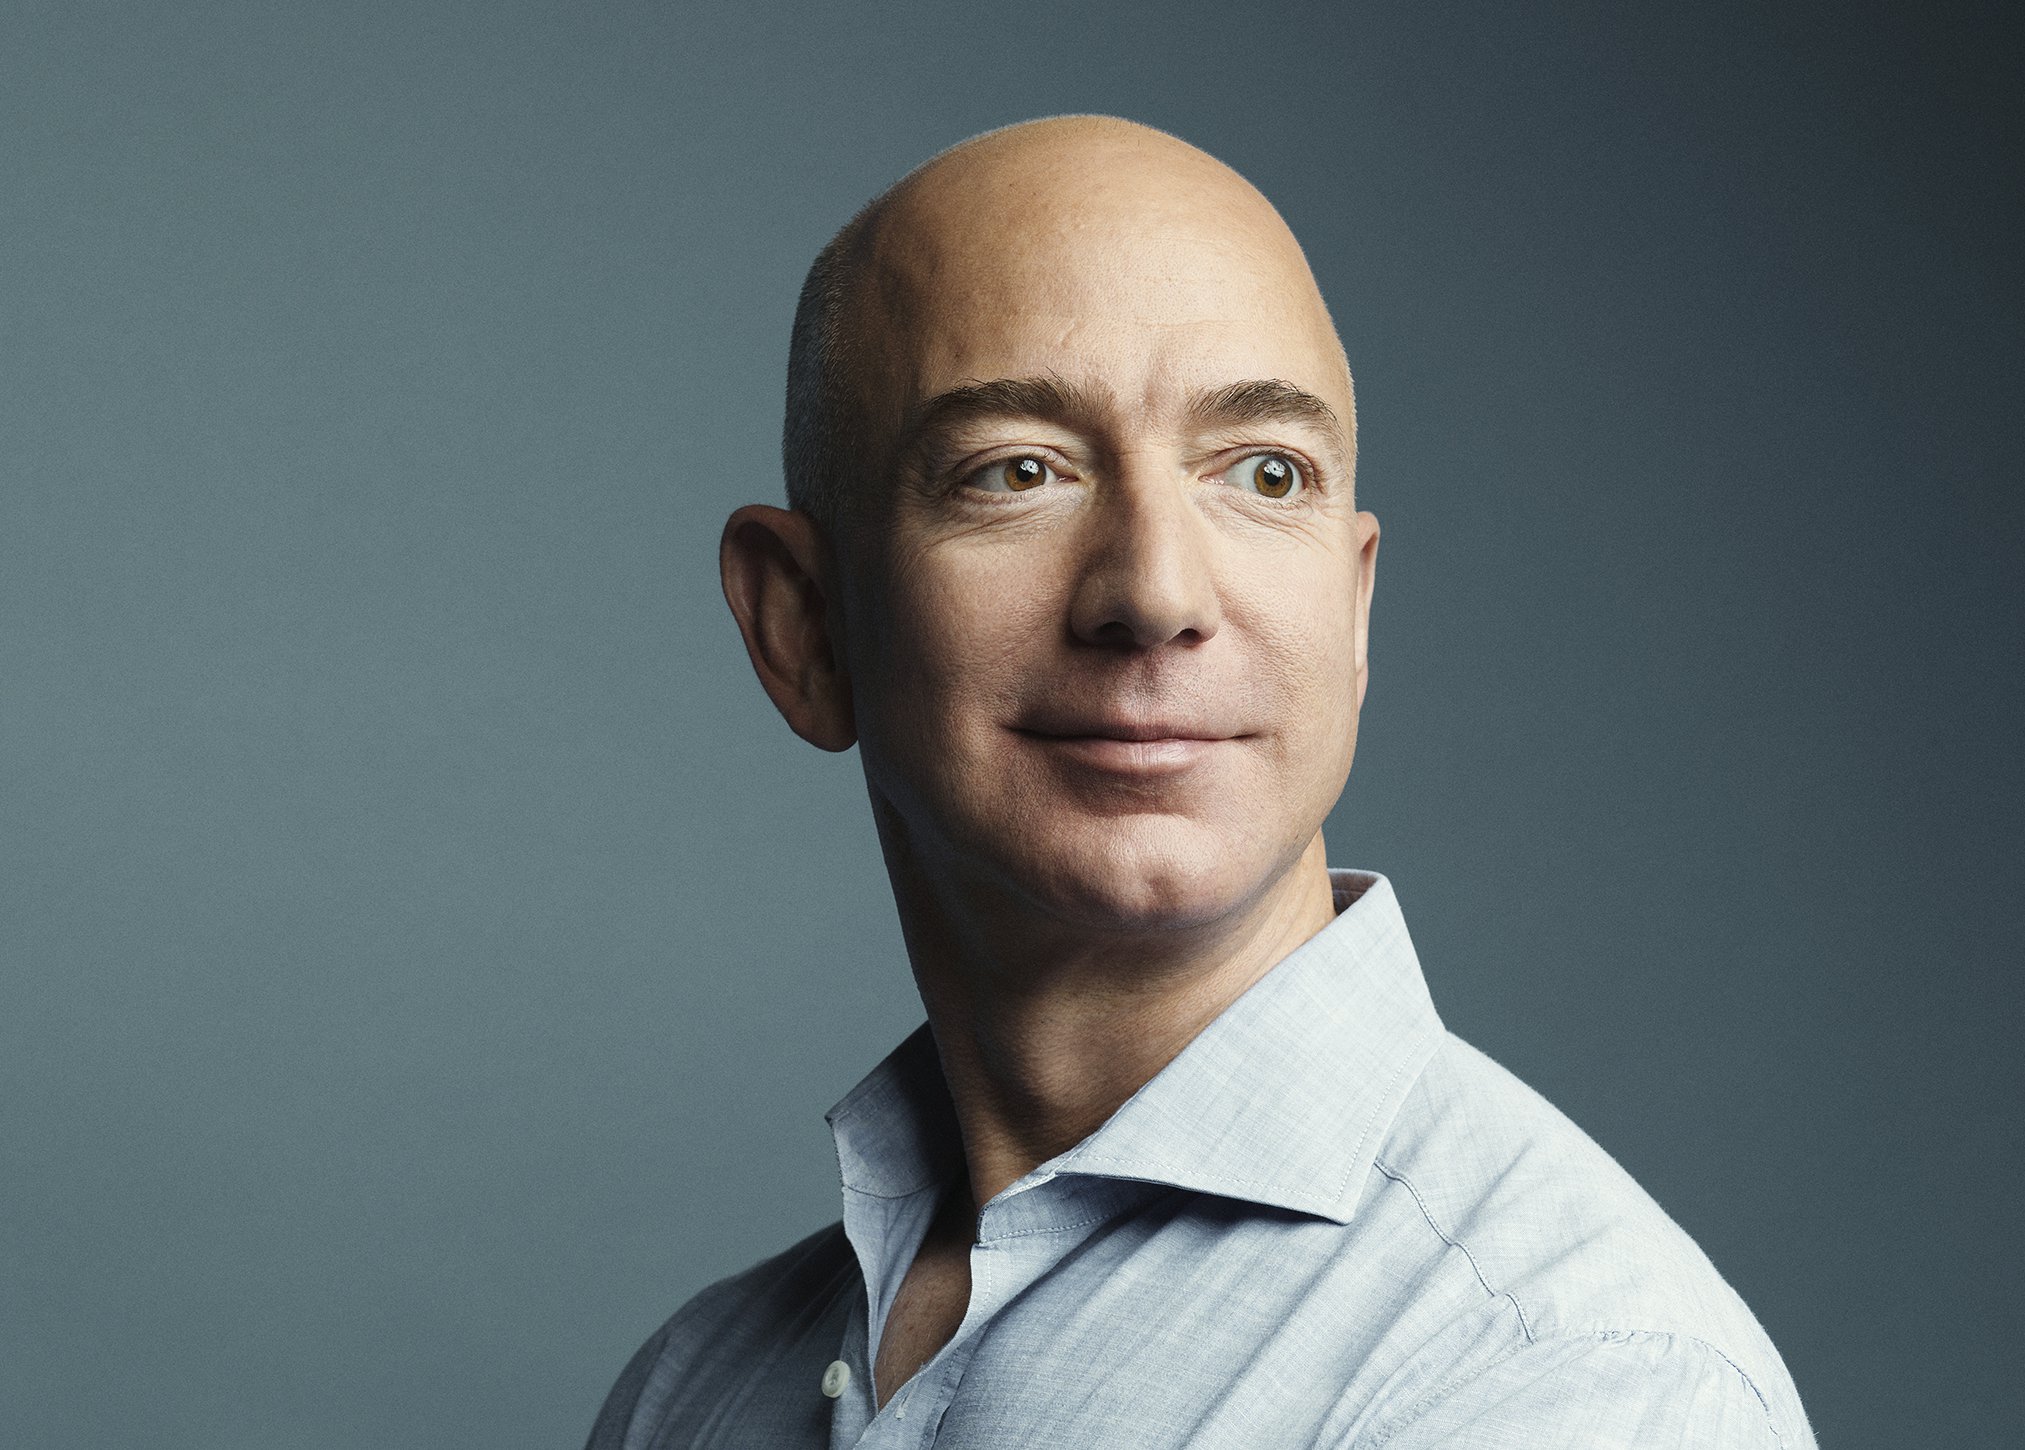 Meet the World's Richest Man, Jeff Bezos Now Worth $100 Billion